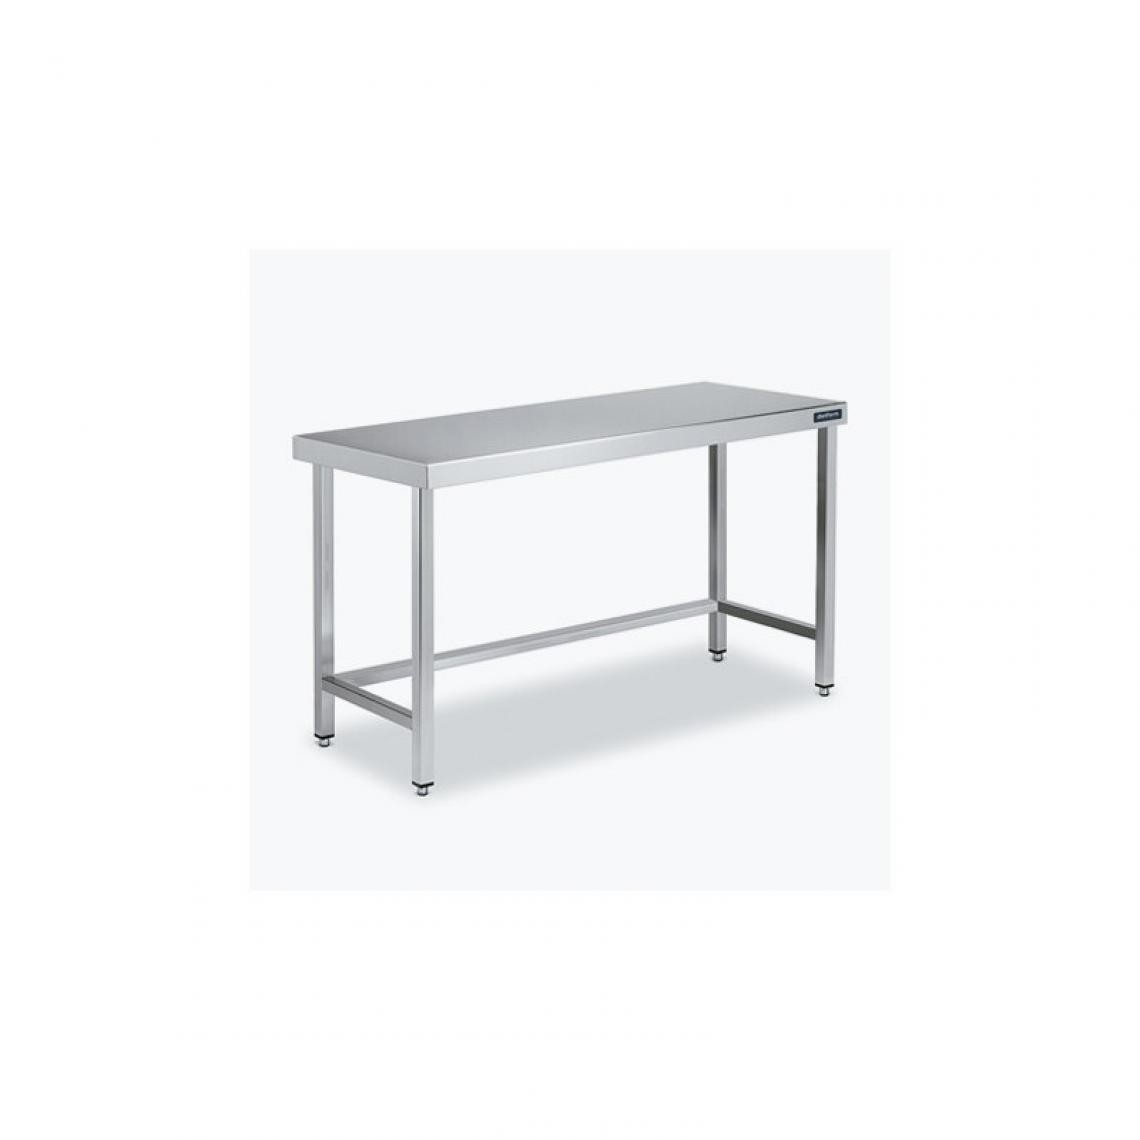 DISTFORM - Table Centrale 600x700 avec Renforts - Distform - Inox 18/101600x700x850mm - Tables à manger